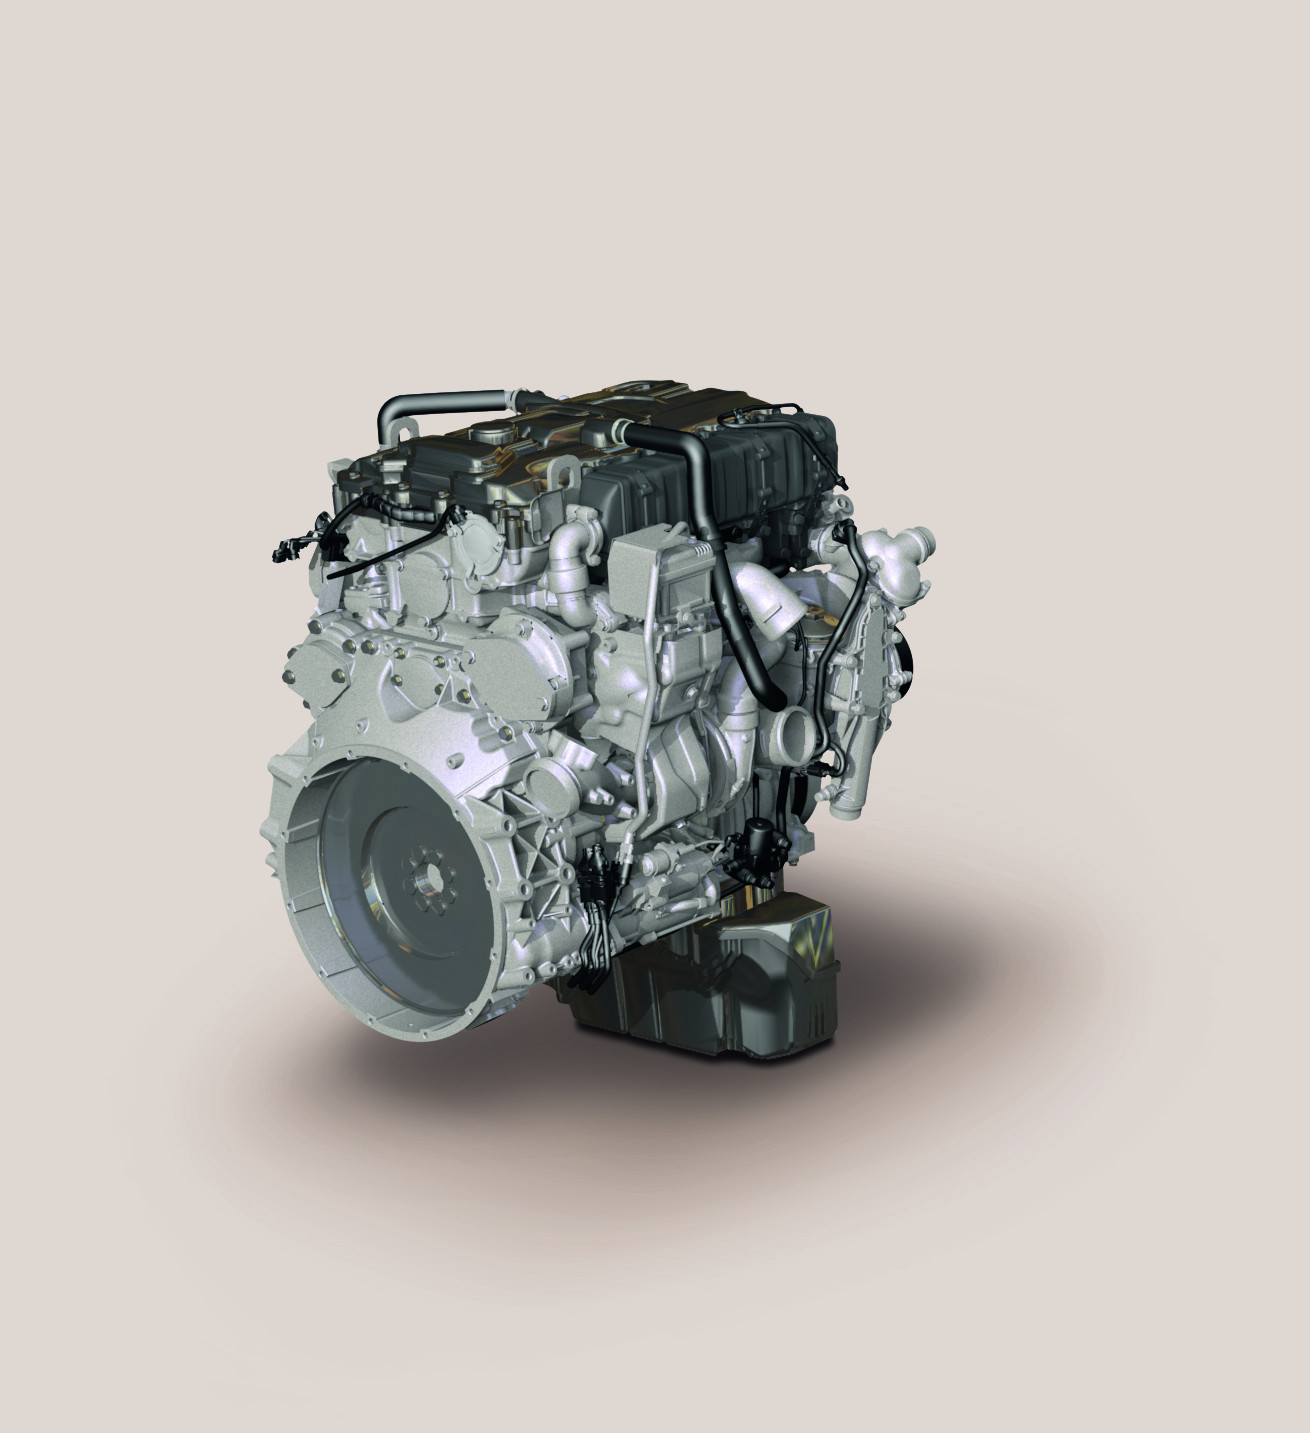 mtu diesel engine parts sell